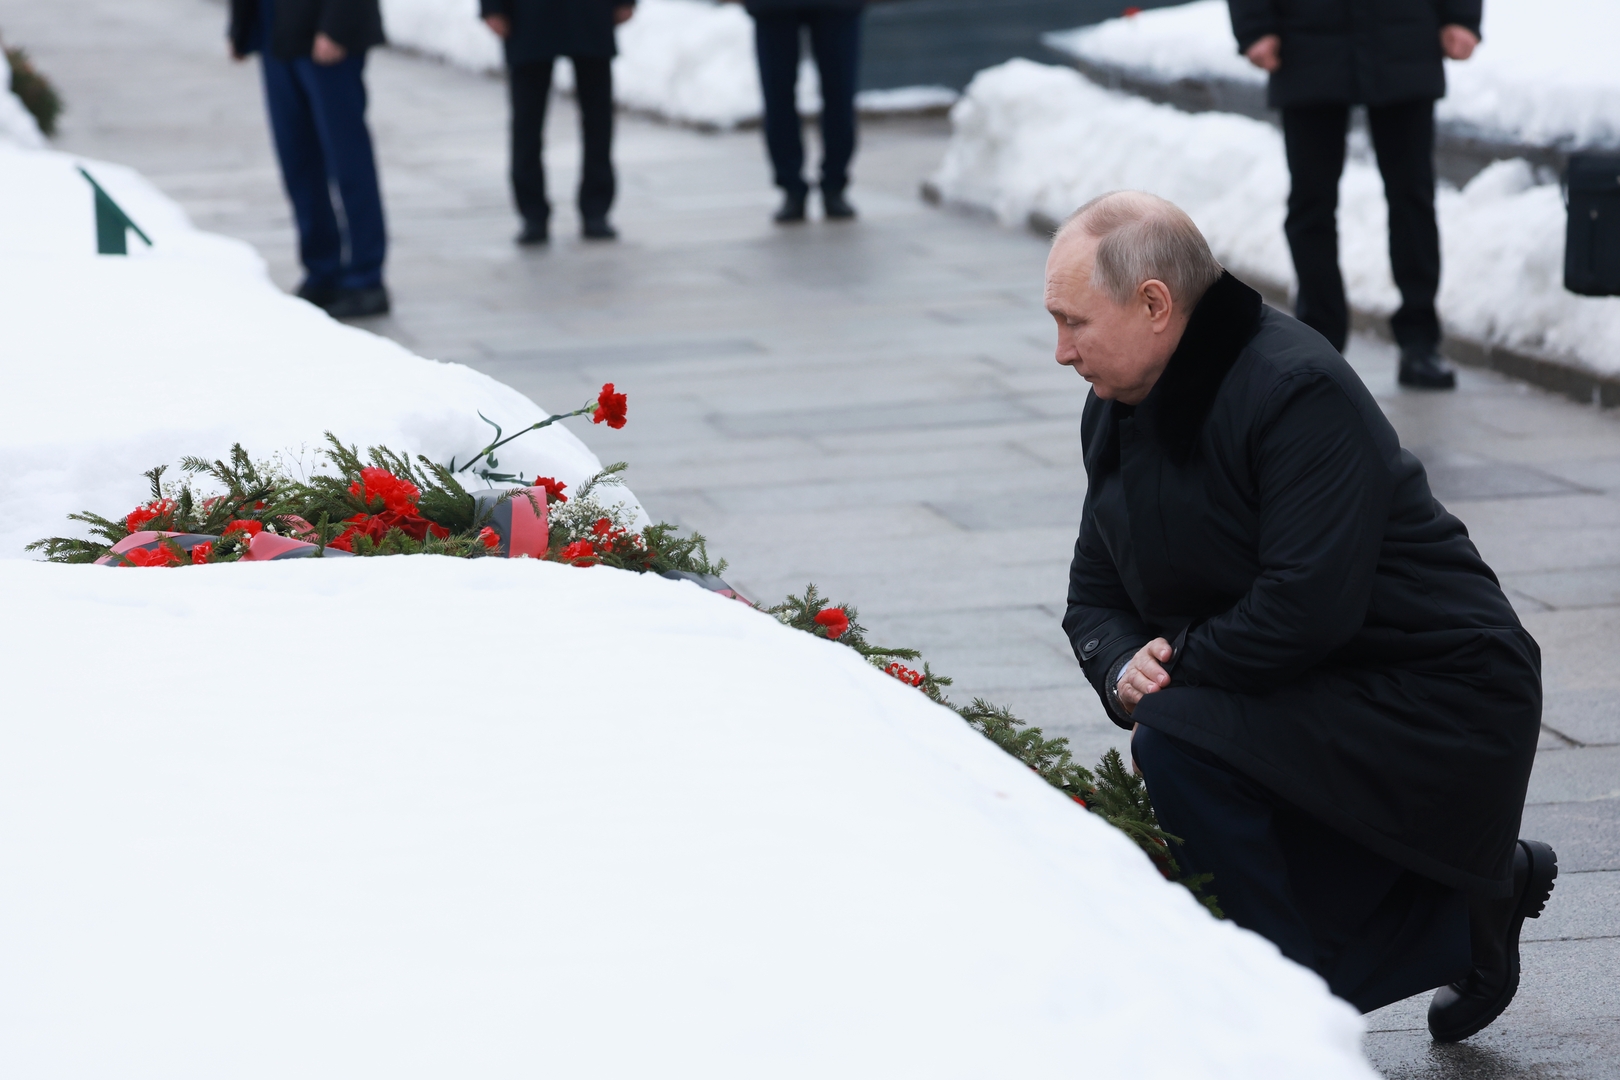 بوتين يجثو على ركبته ويضع الزهور على ضريح جماعي يضم جثمان أخيه (فيديو + صورة)